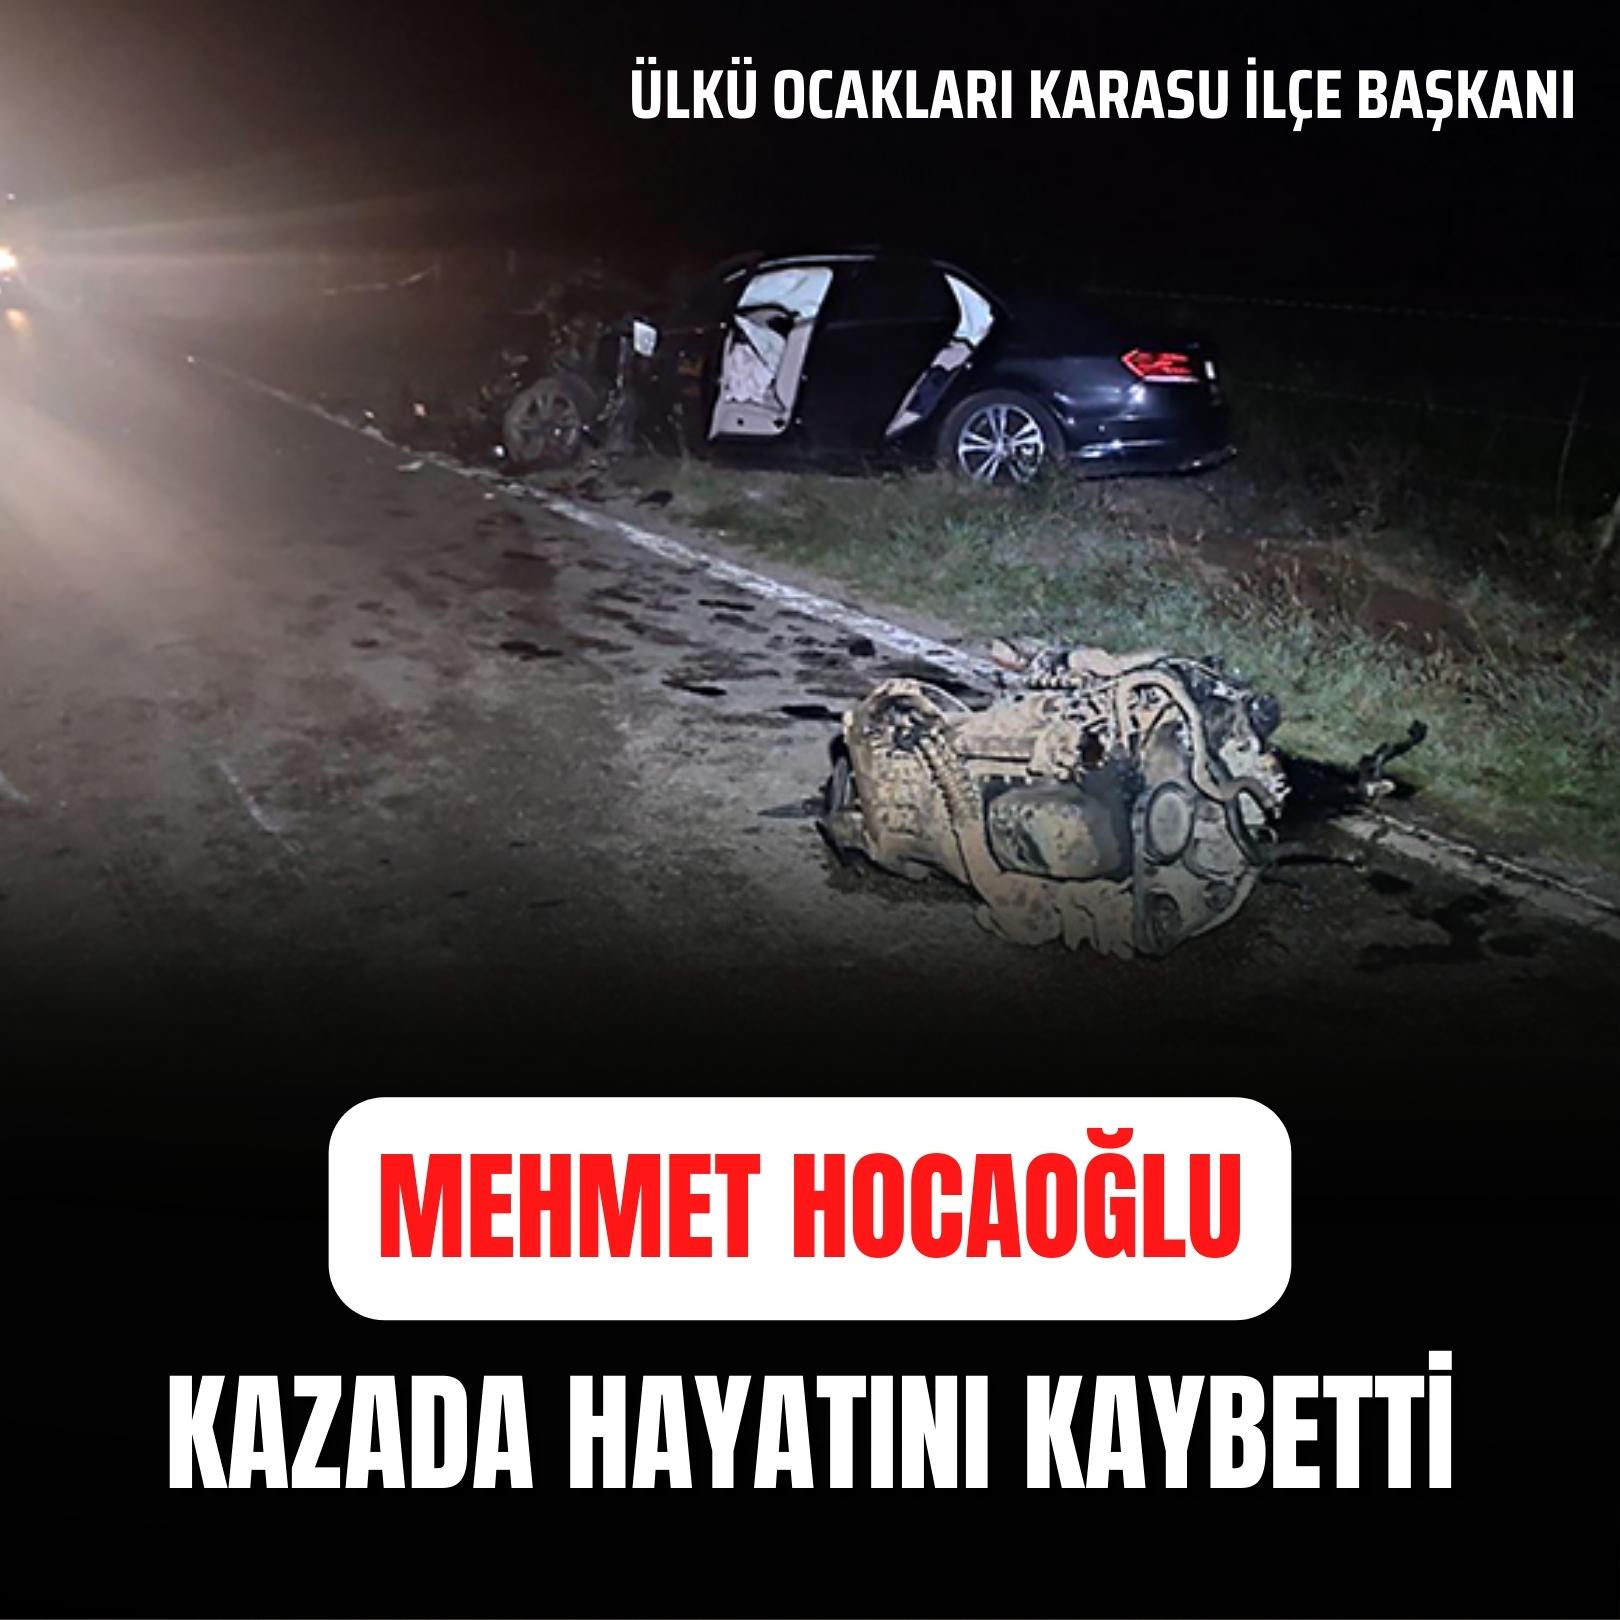 Ülkü Ocakları Karasu İlçe Başkanı Mehmet Hocaoğlu trafik kazasında hayatını kaybetti